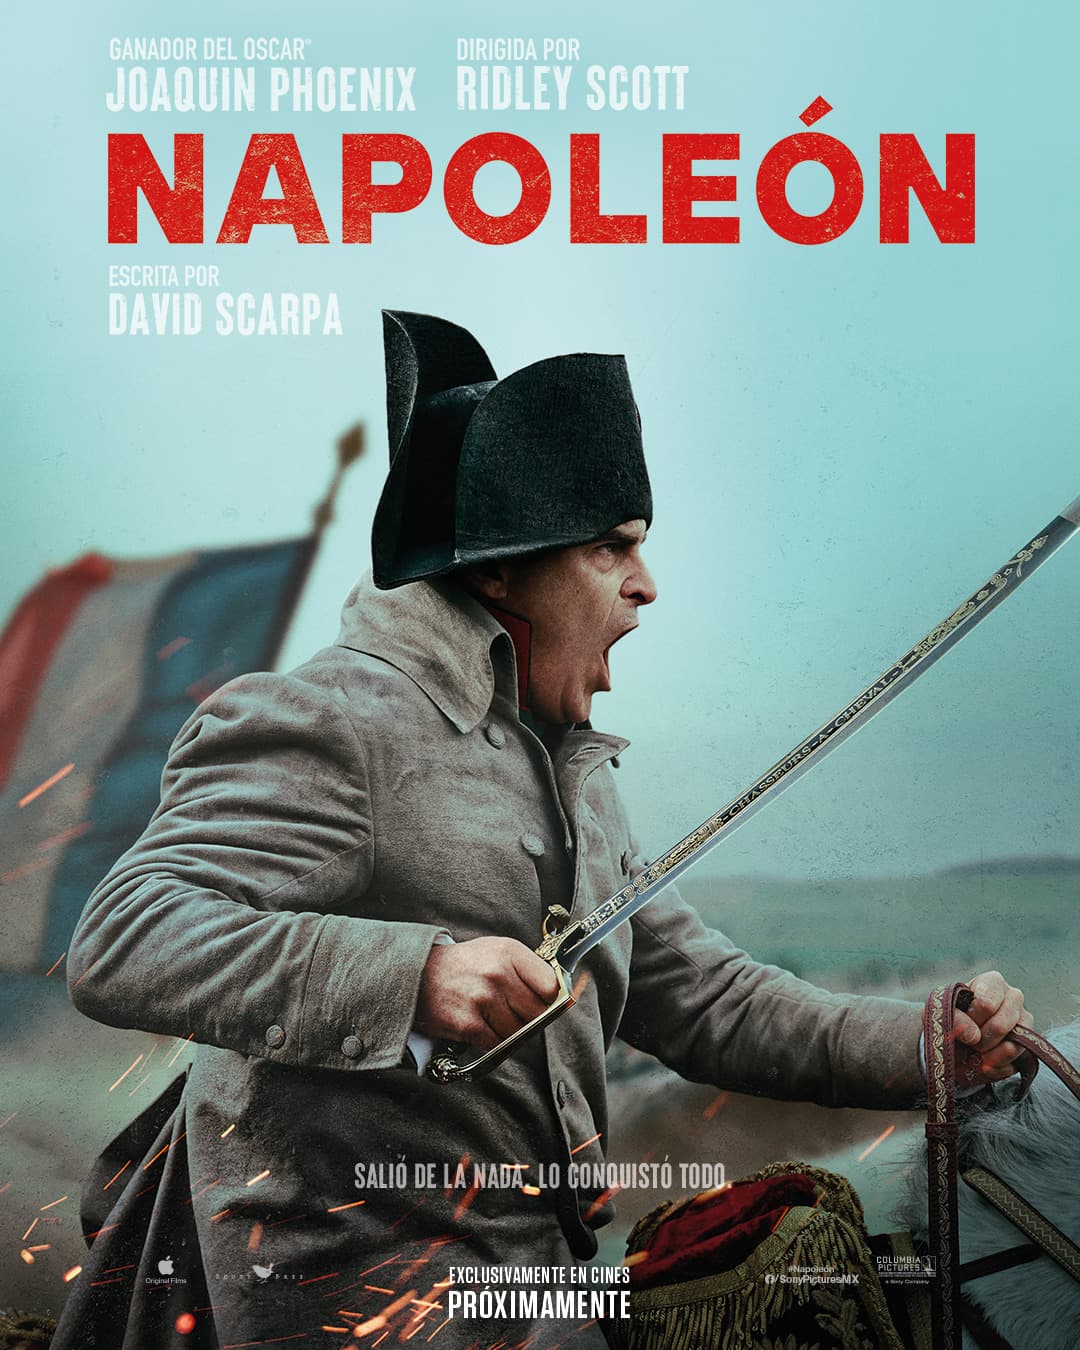 Фильм «Наполеон» Ридли Скотта получил первую критику